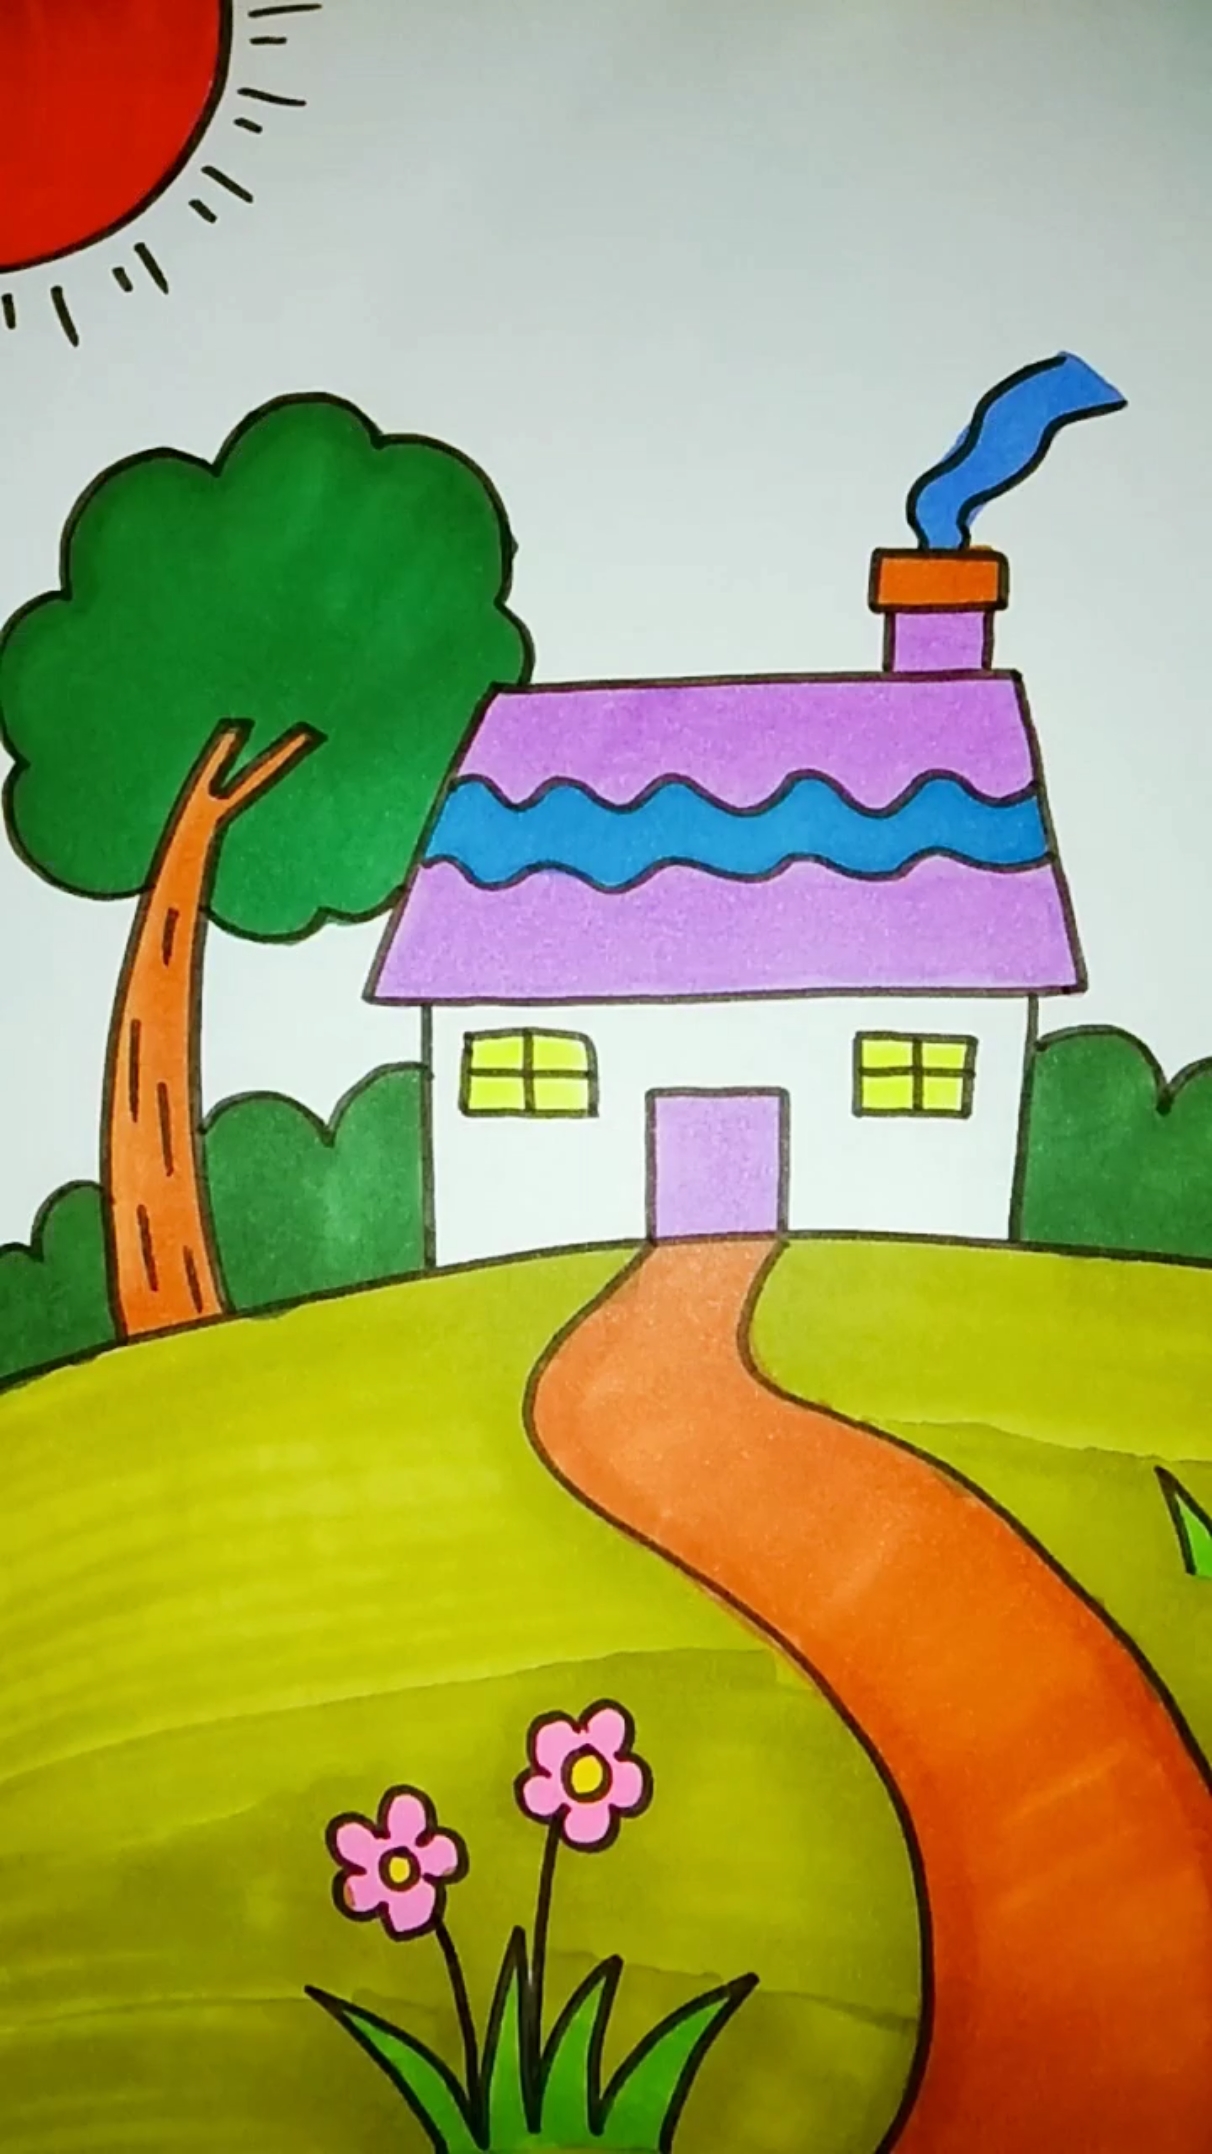 画一个可爱的小房子图片